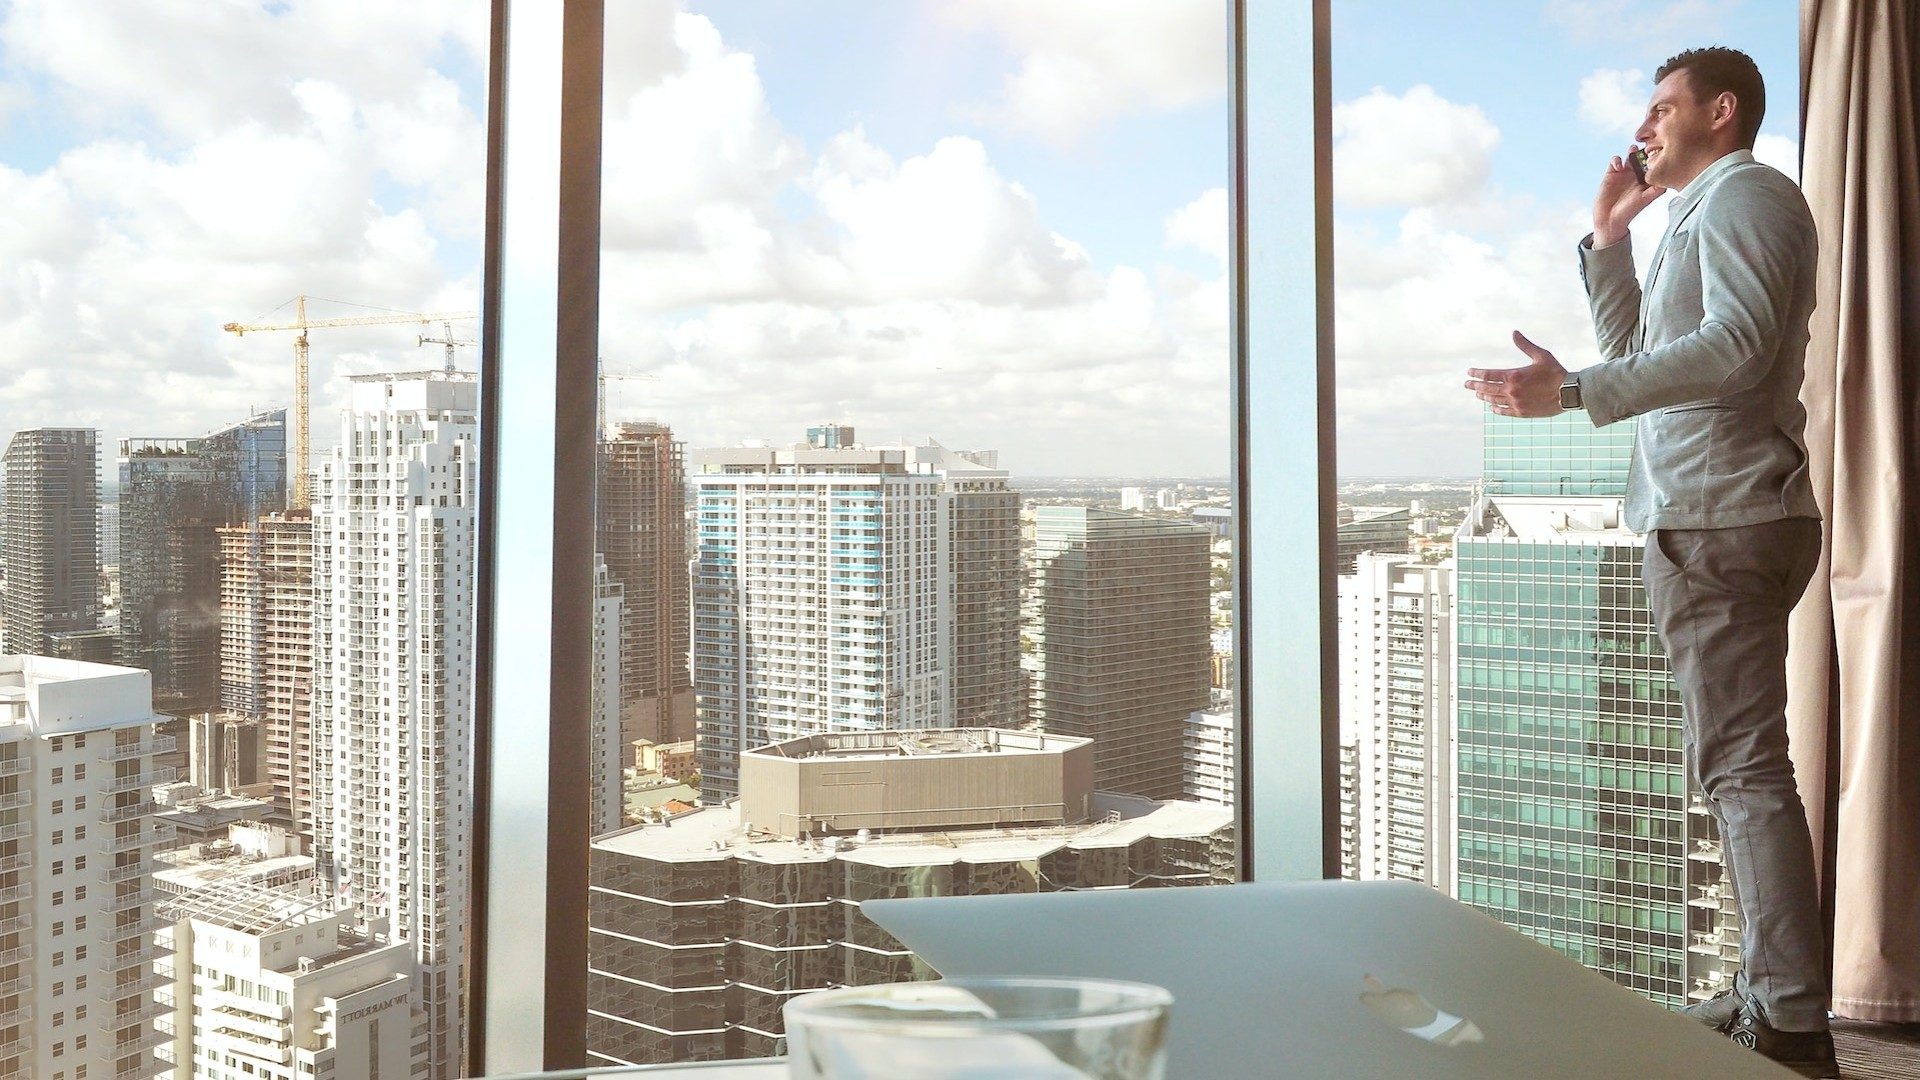 Ein Geschäftsmann spricht am Handy, hinter ihm die Skyline einer Metropole mit vielen Hochhäusern